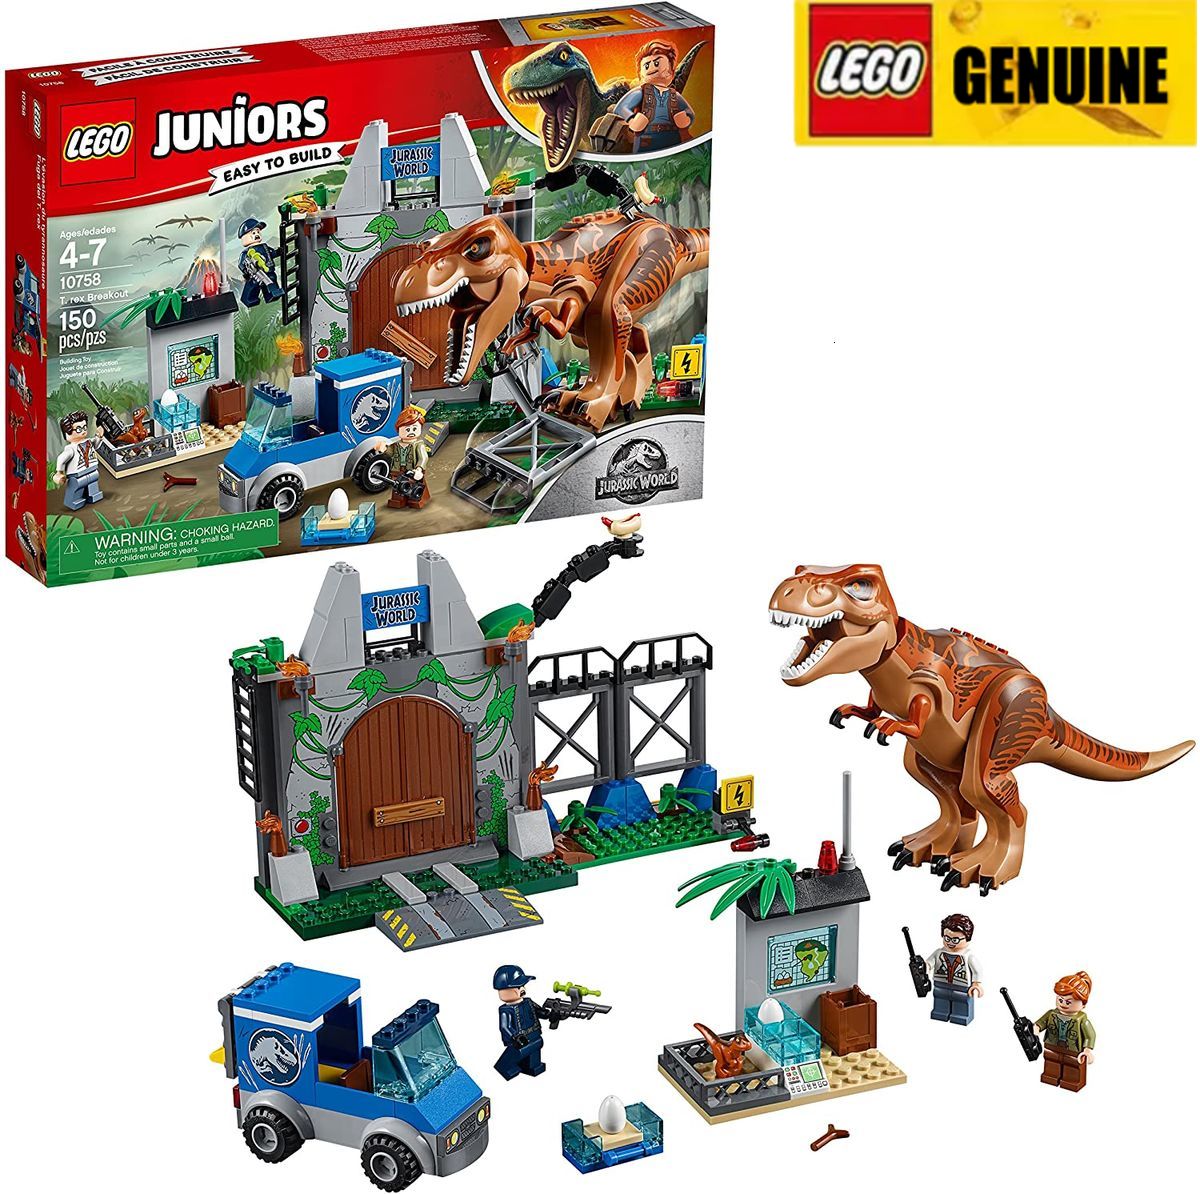 【Genuine】LEGO LEGO Juniors / 4 + Bộ khối xây dựng Jurassic World T. rex Breakout 10758 (150 miếng) Đảm bảo chính hãng, từ Đan Mạch